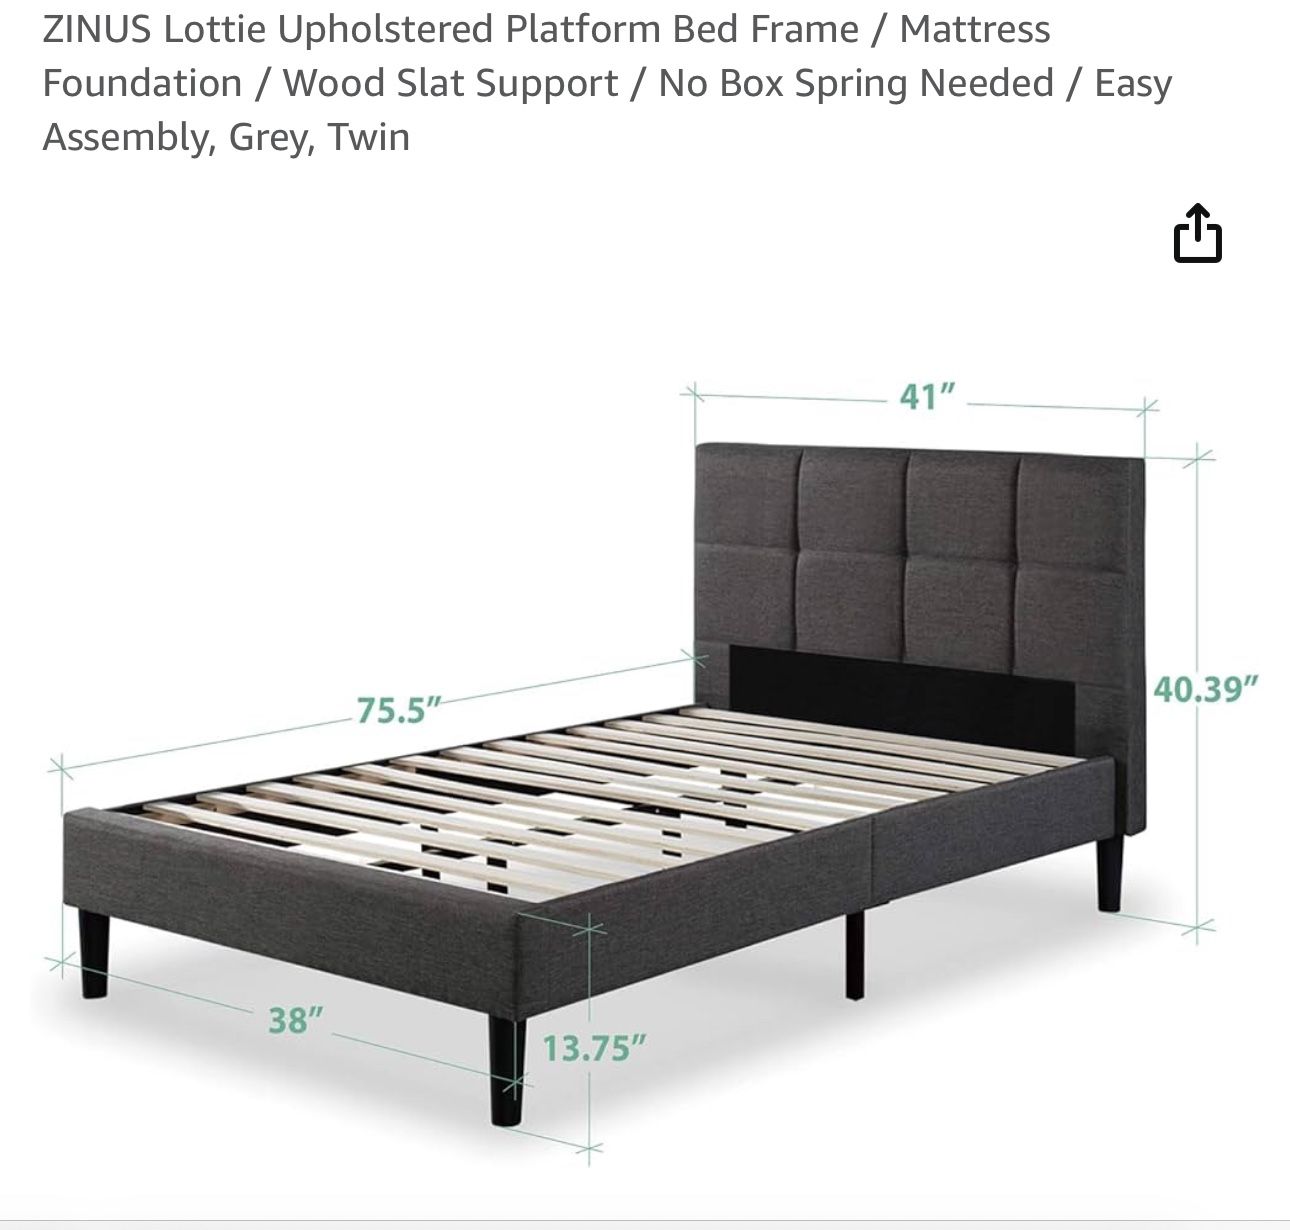 Twin bed Platform Bed Frame